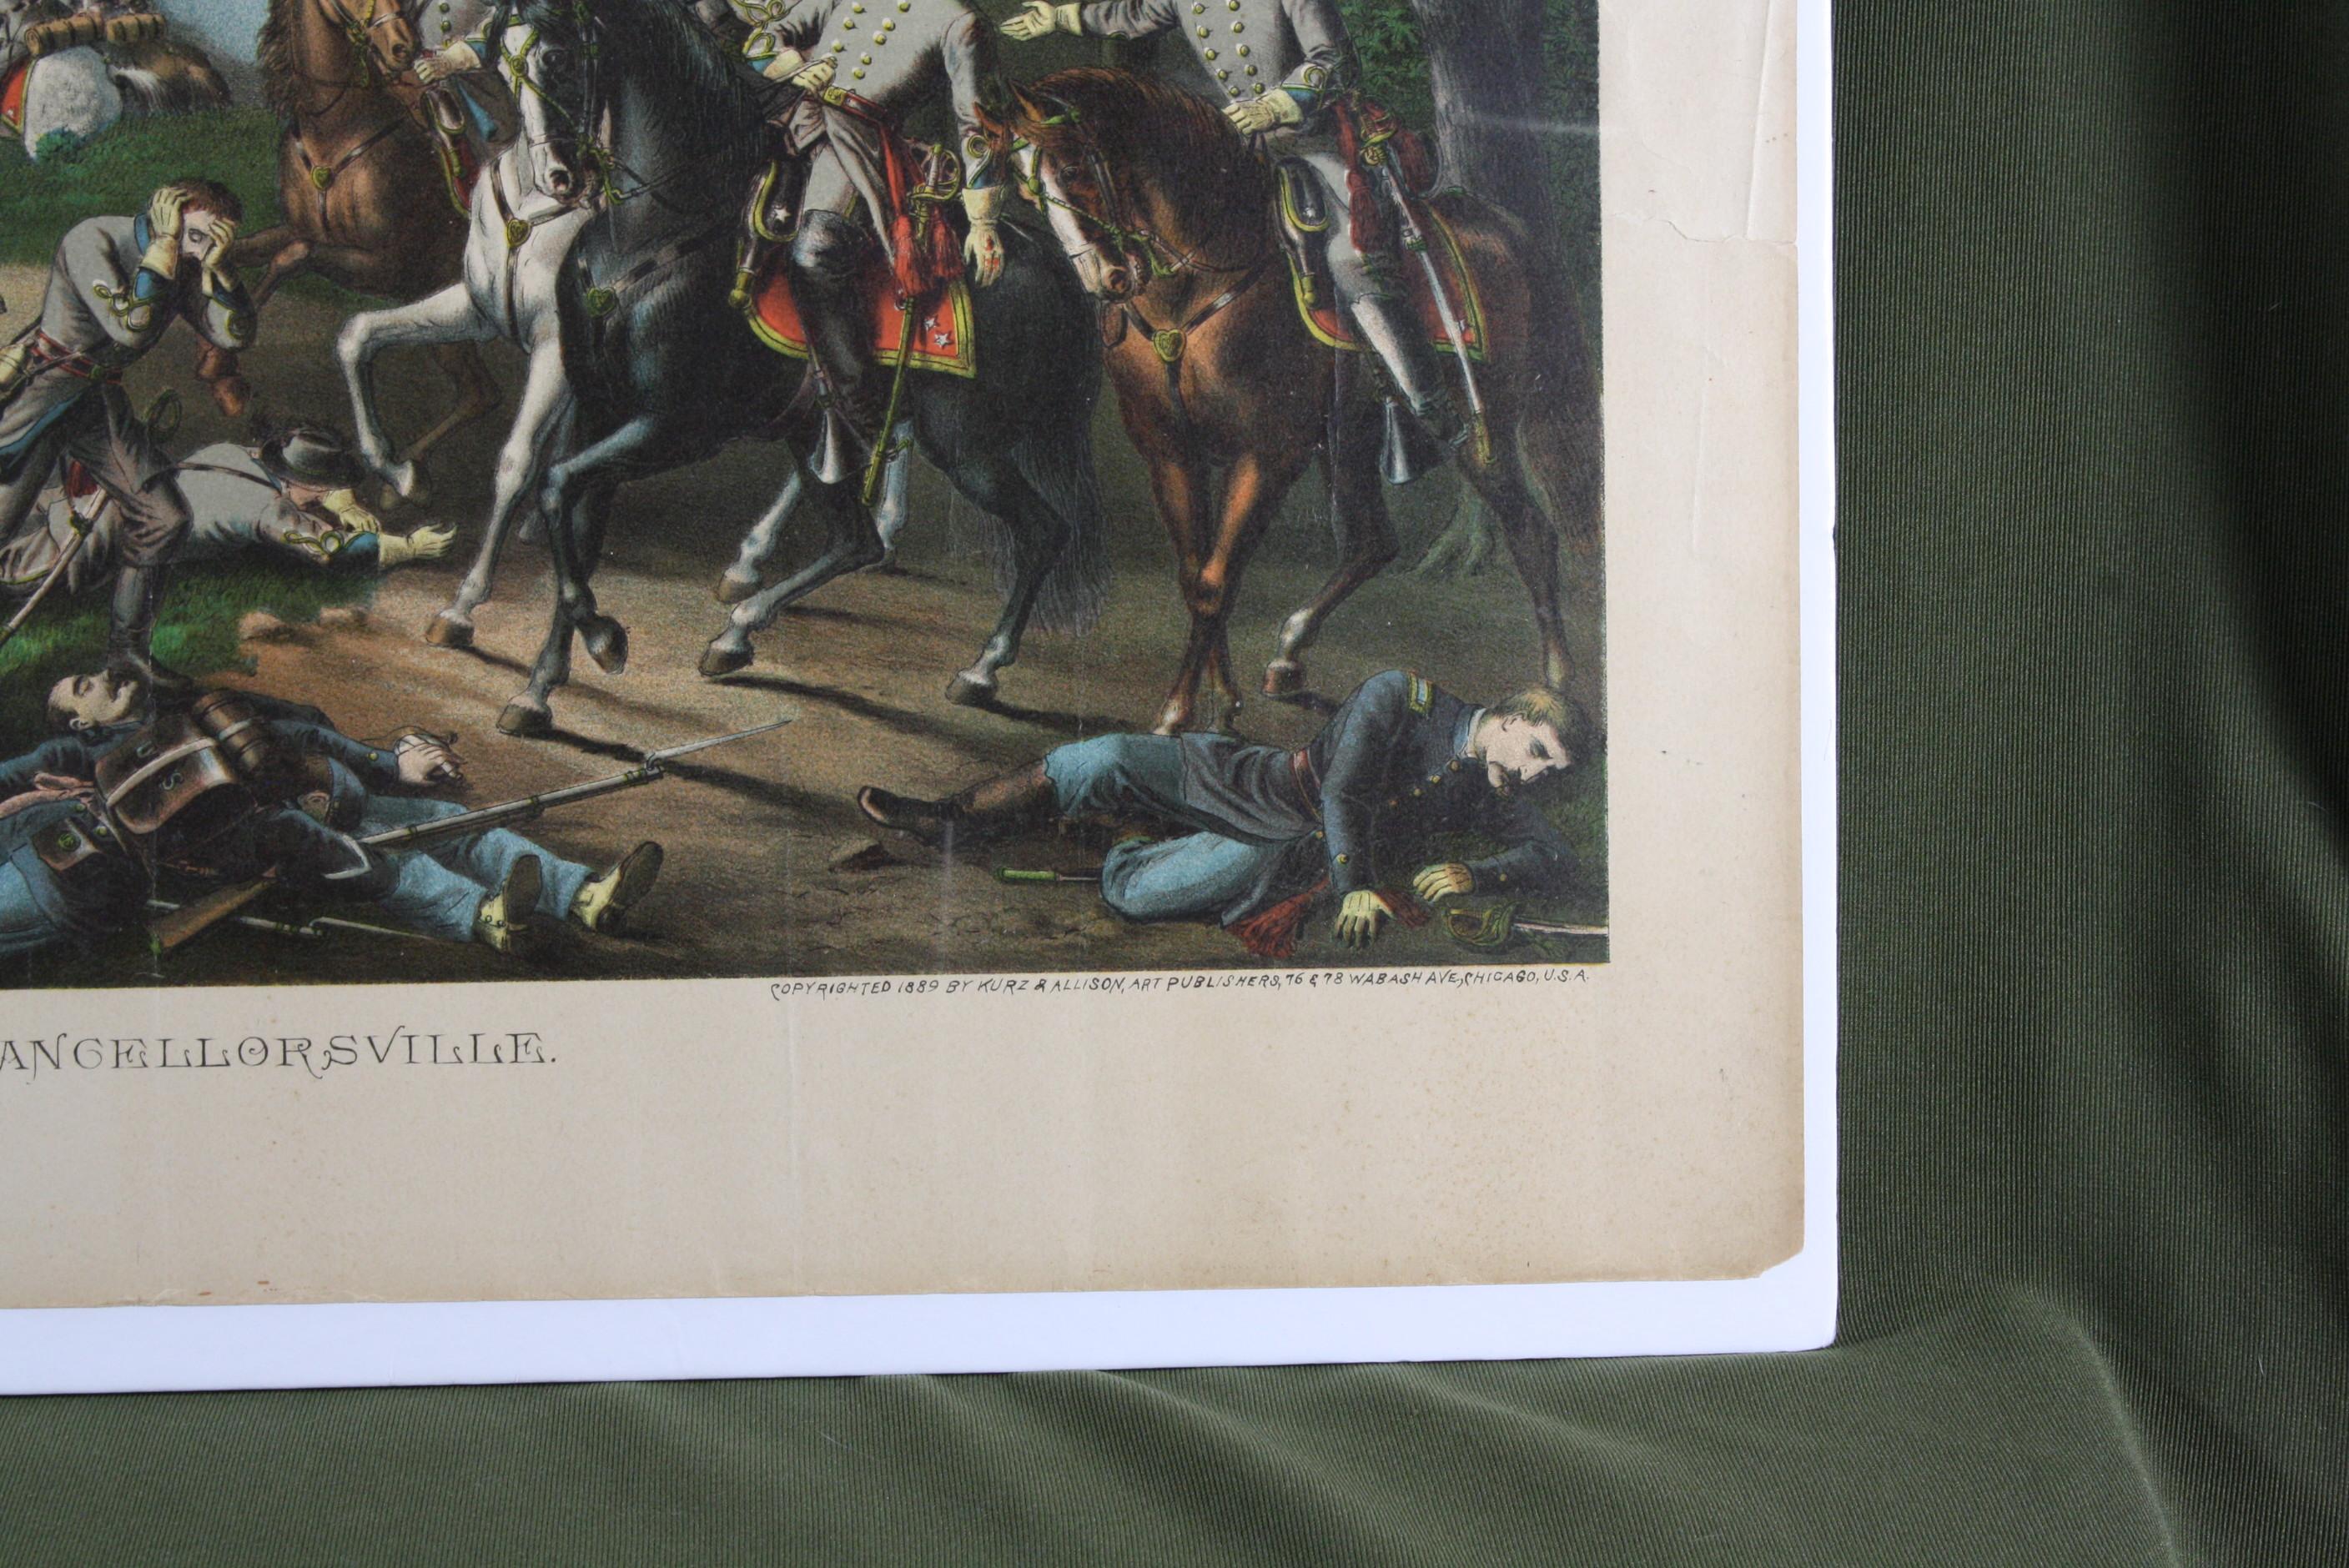 1889 Civil War “Battle of Chancellorsville” print